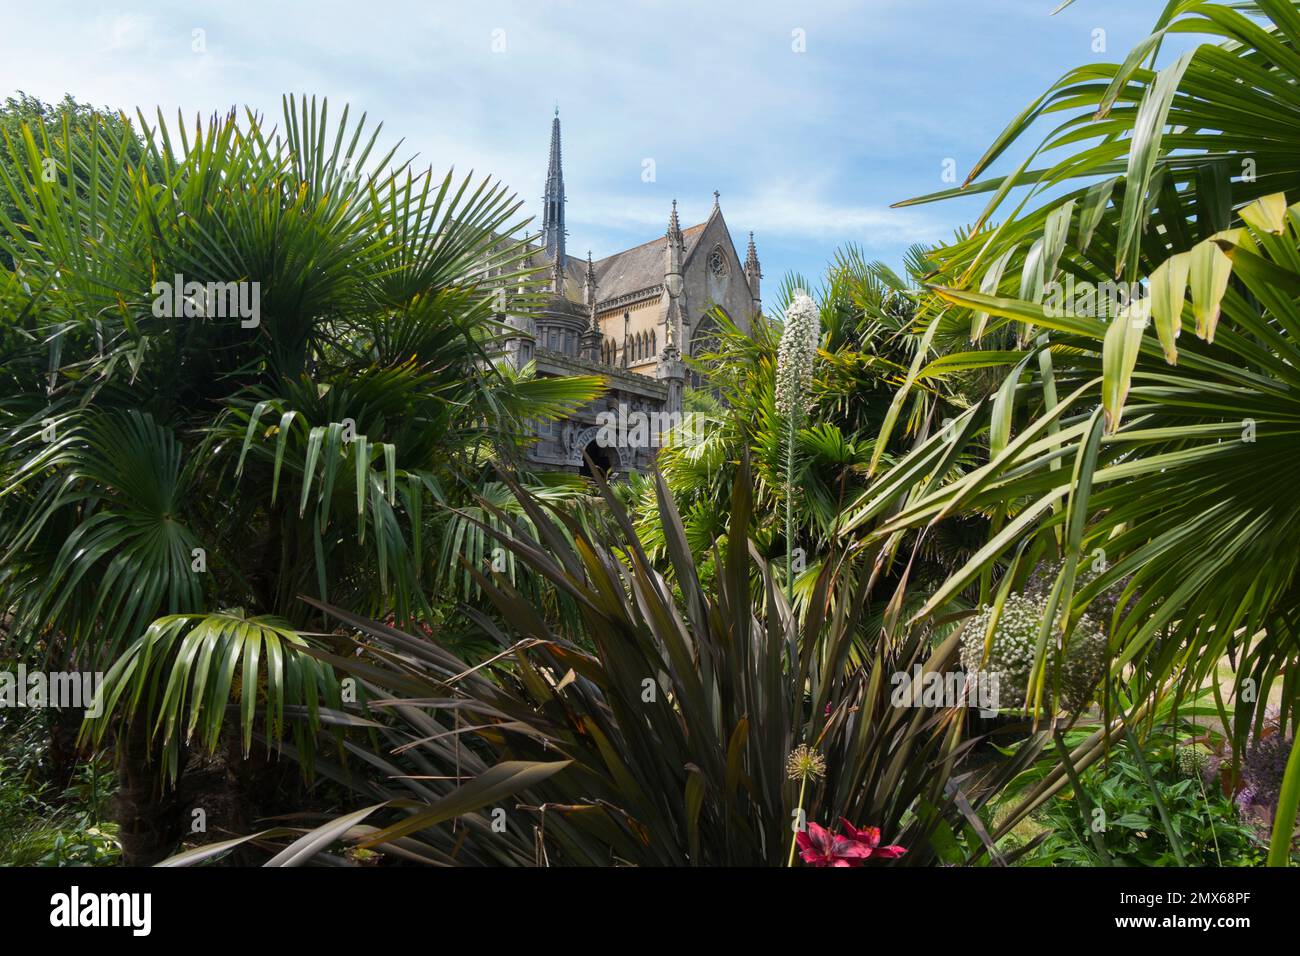 Baumfarne, Canna Lillies, Cordyline und Salvias im tropischen Garten, Teil des Earl's Garden mit Arundel Cathedral im Hintergrund. Stockfoto